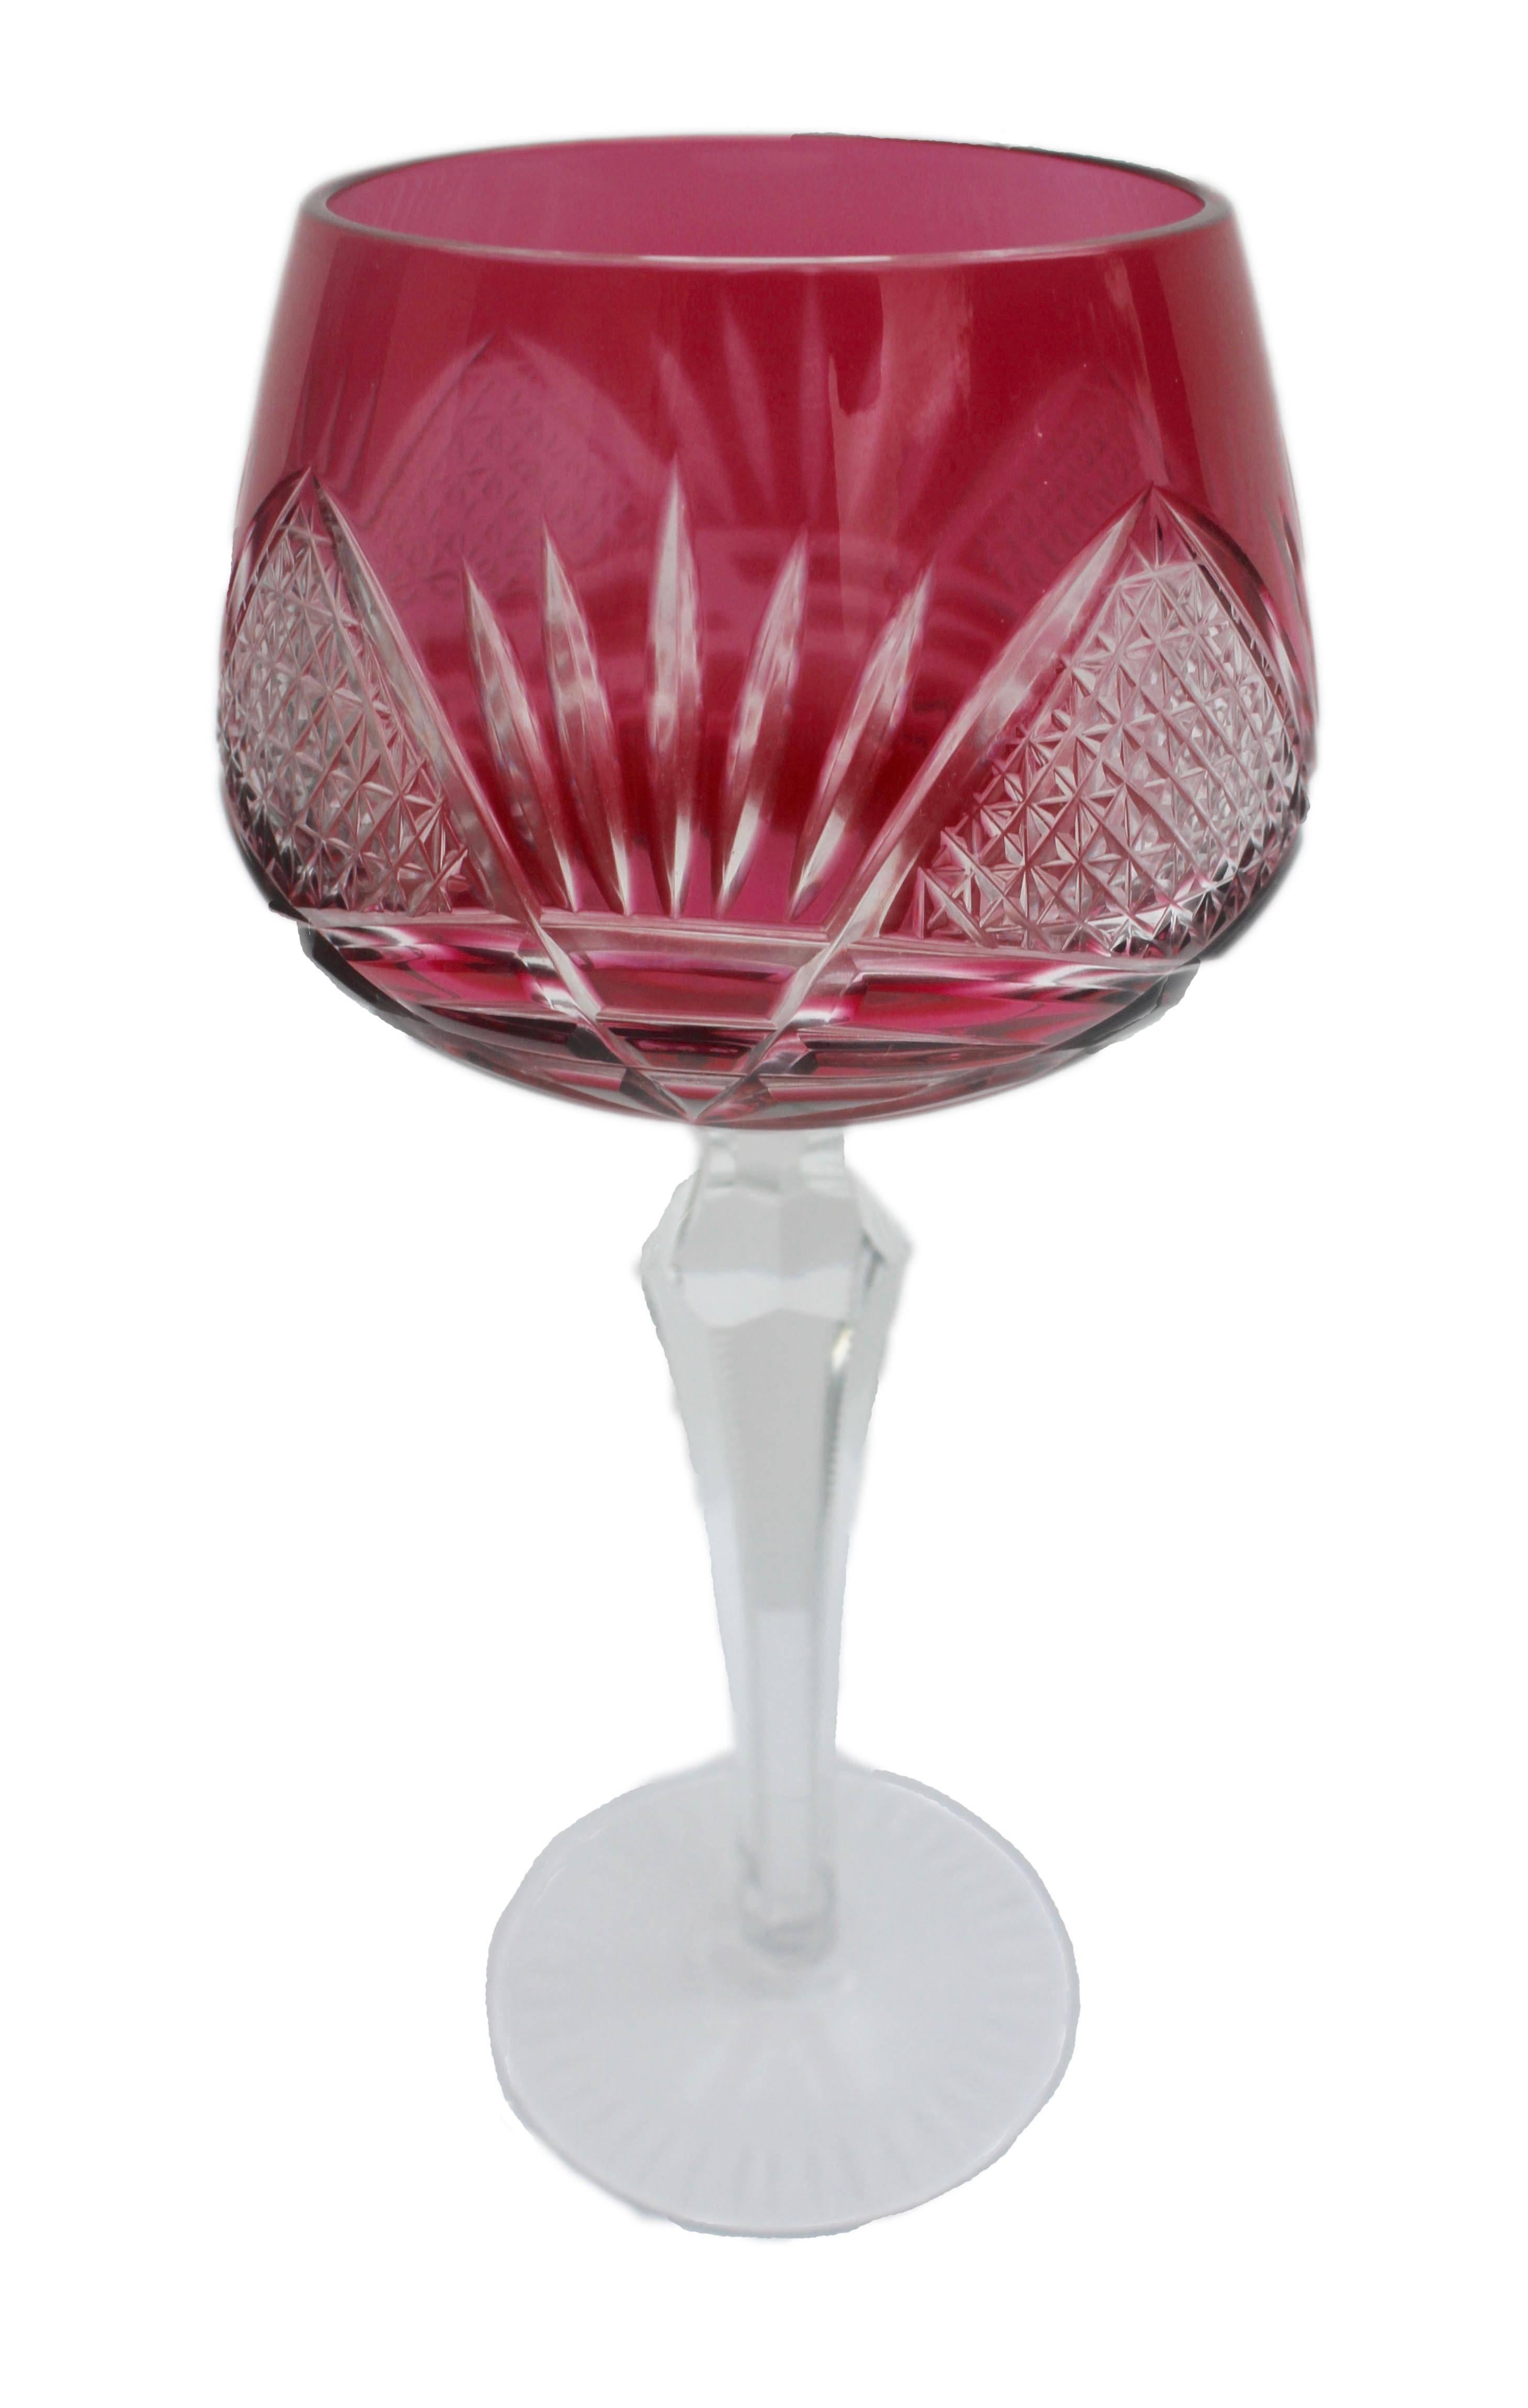 bleikristall crystal wine glasses